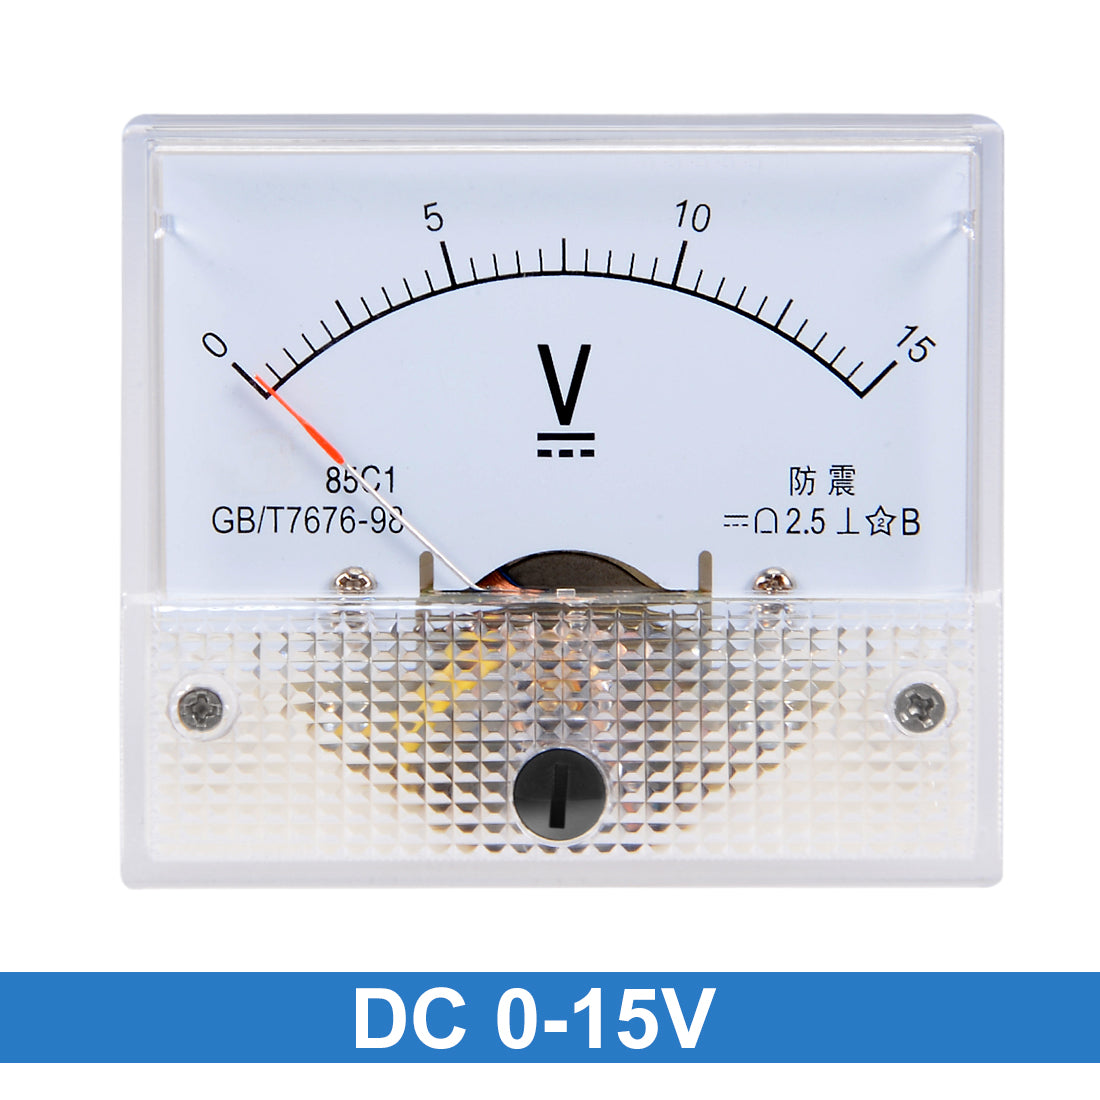 uxcell Uxcell DC 0-15V Analog Panel Voltage Gauge Volt Meter 85C1 2.5% Error Margin